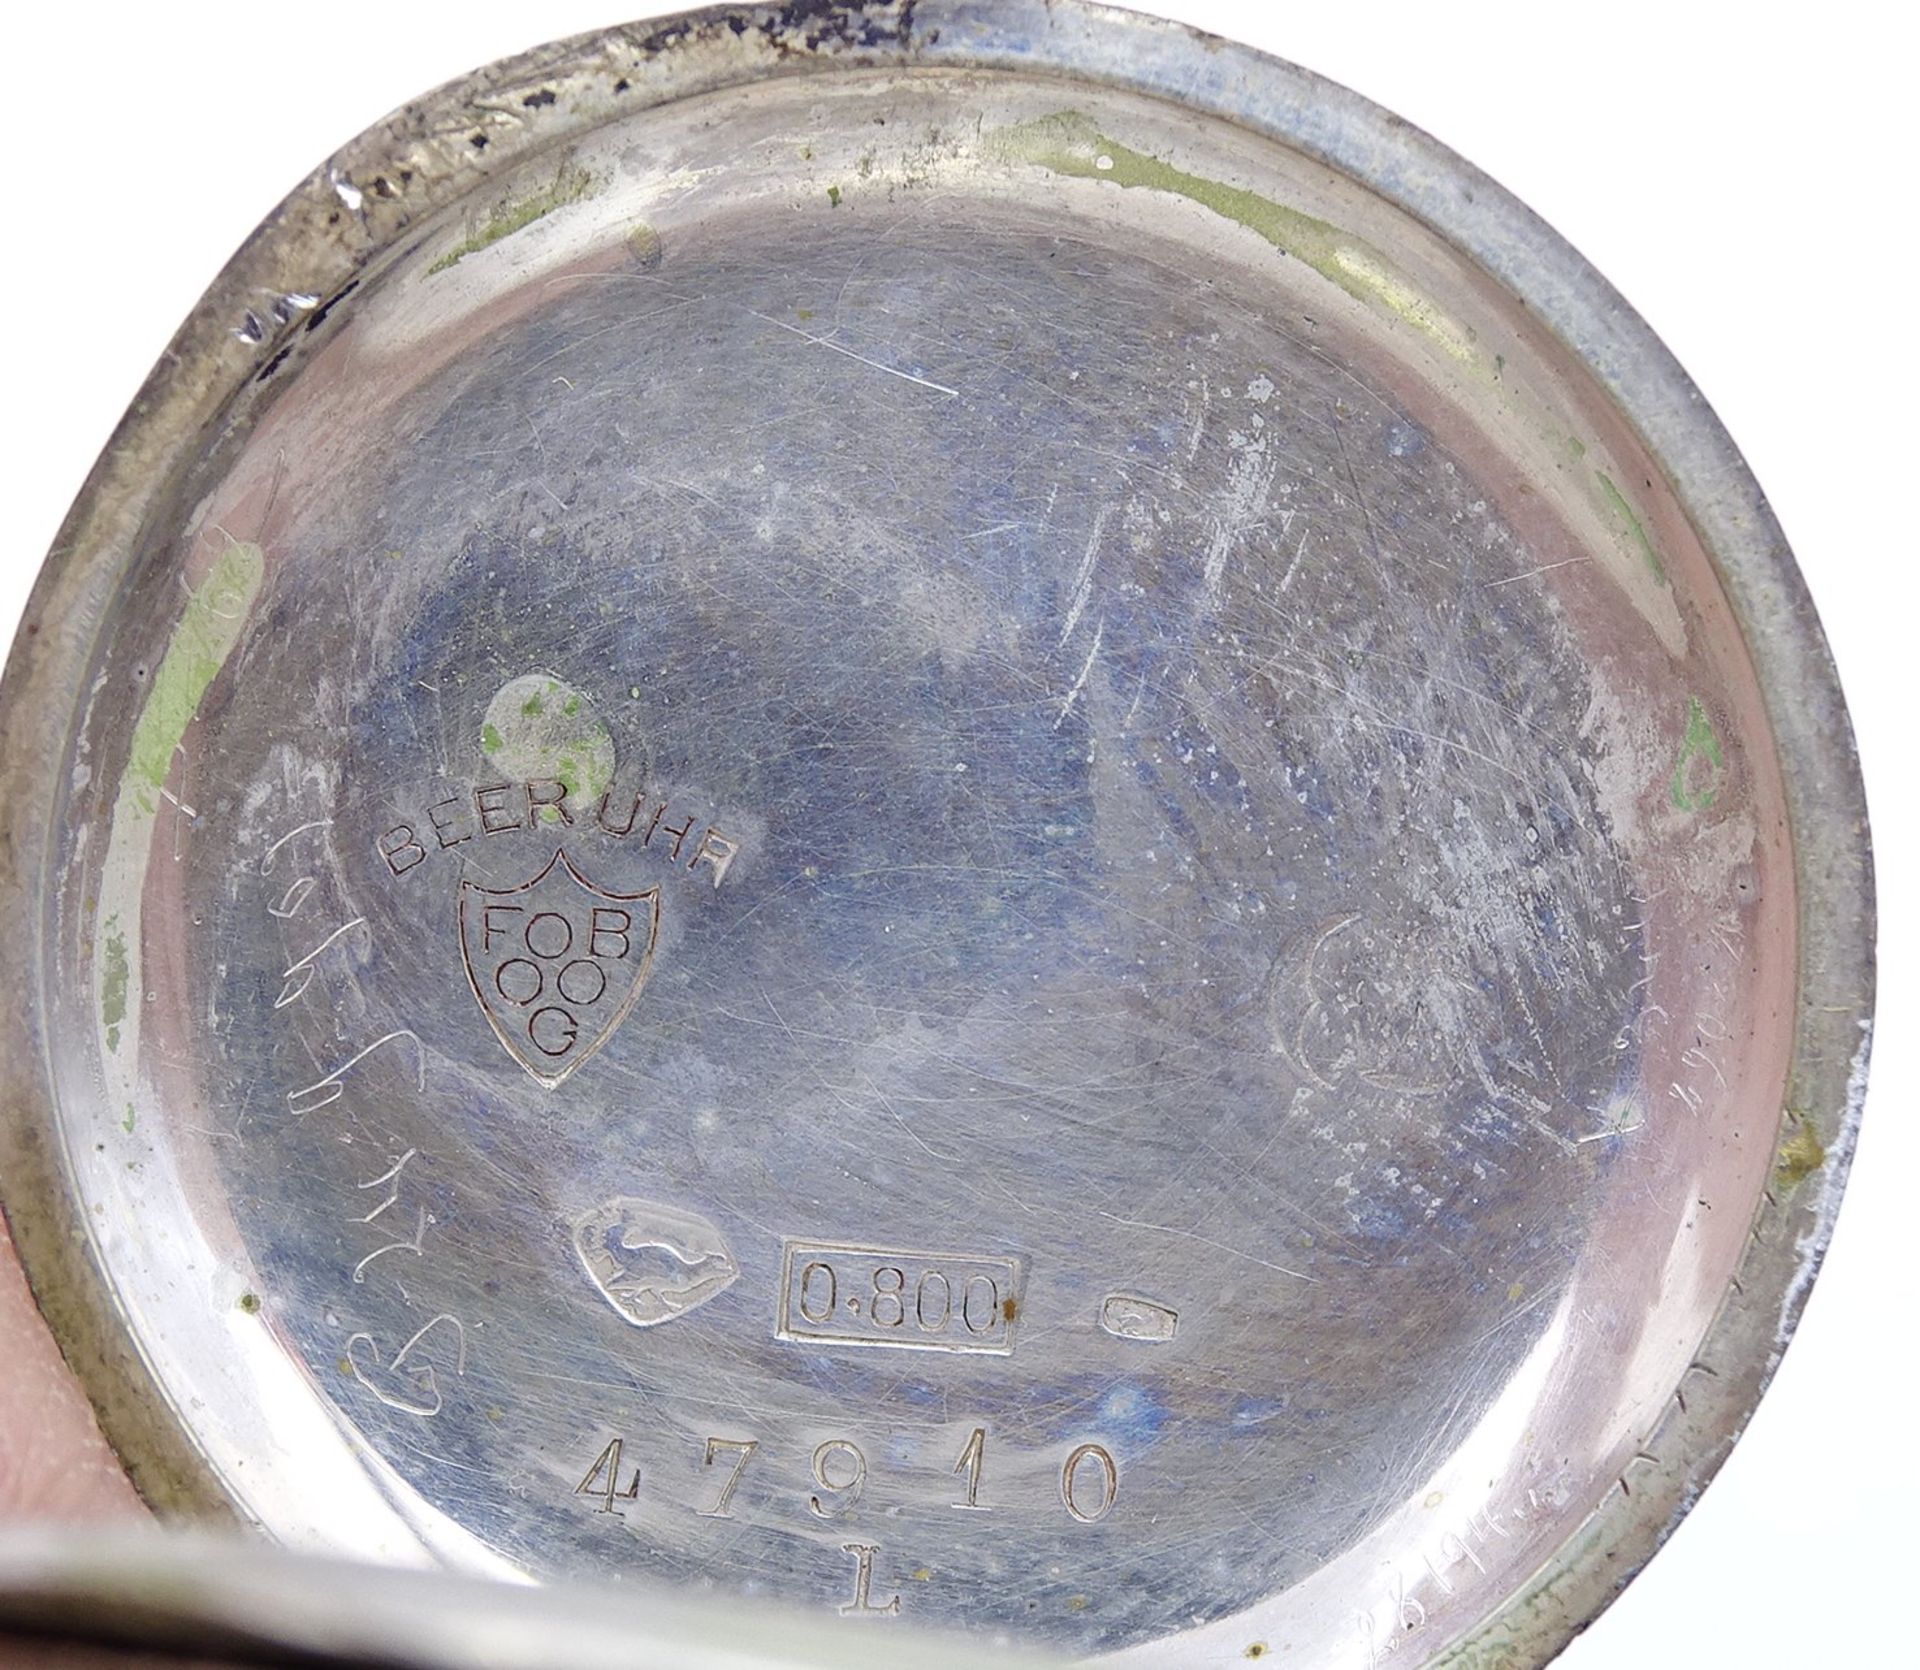 "Beer Uhr" Taschenuhr F. Beer-Grüring, Silbergehäuse 0.800, D. 32mm, mechanisch, verso mit Monogram - Bild 5 aus 6